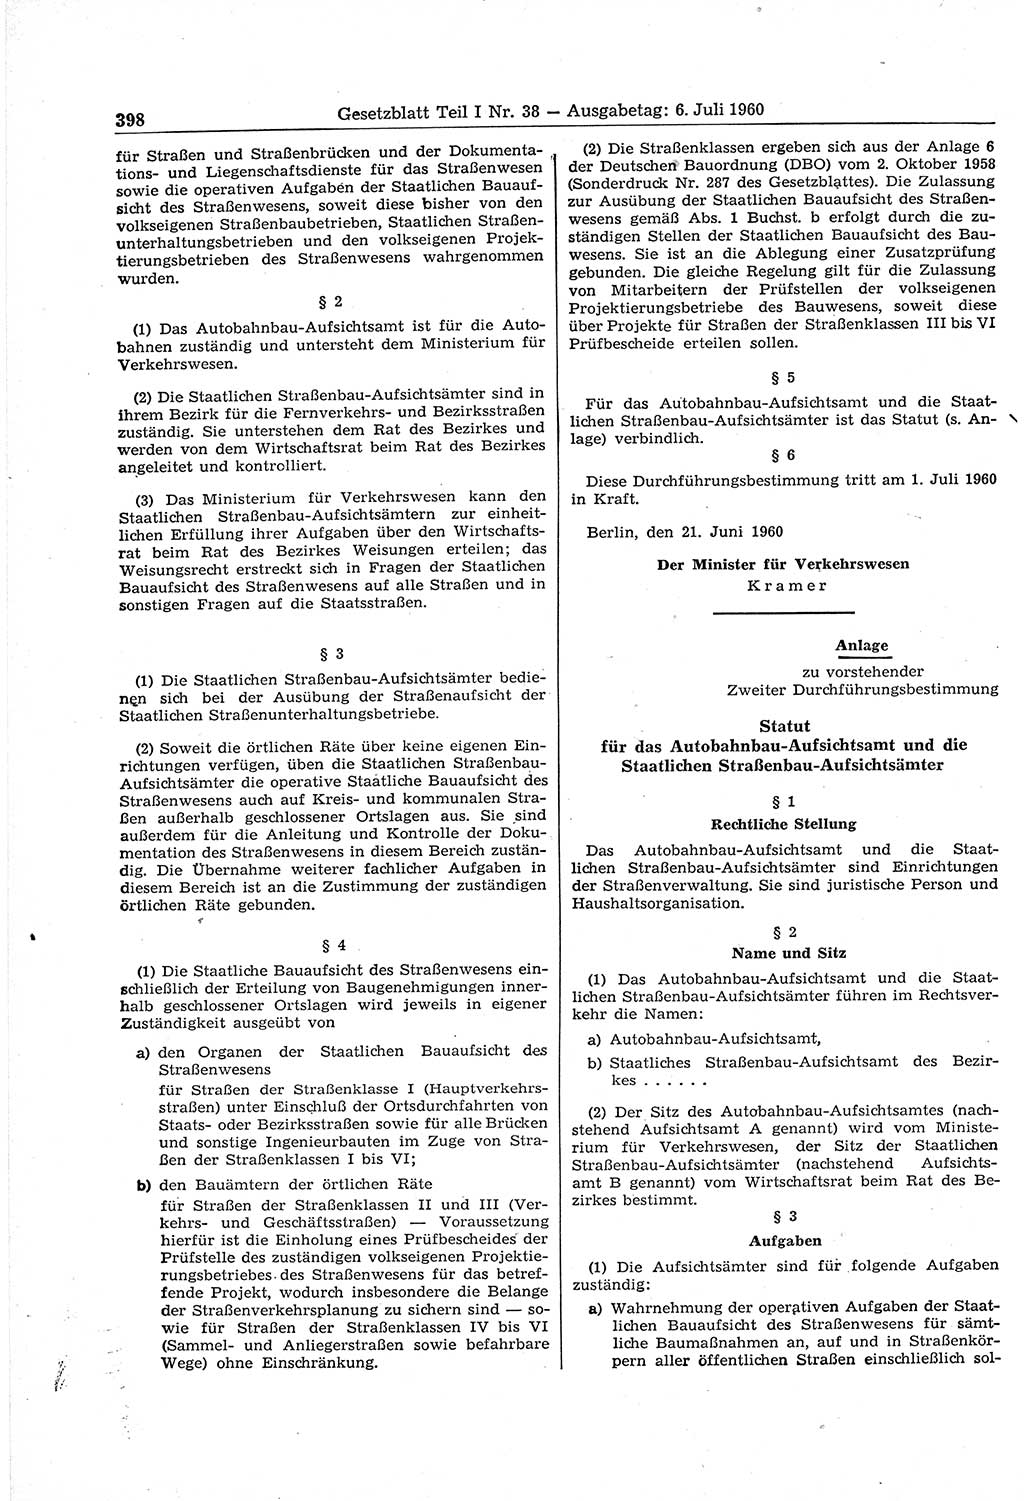 Gesetzblatt (GBl.) der Deutschen Demokratischen Republik (DDR) Teil Ⅰ 1960, Seite 398 (GBl. DDR Ⅰ 1960, S. 398)